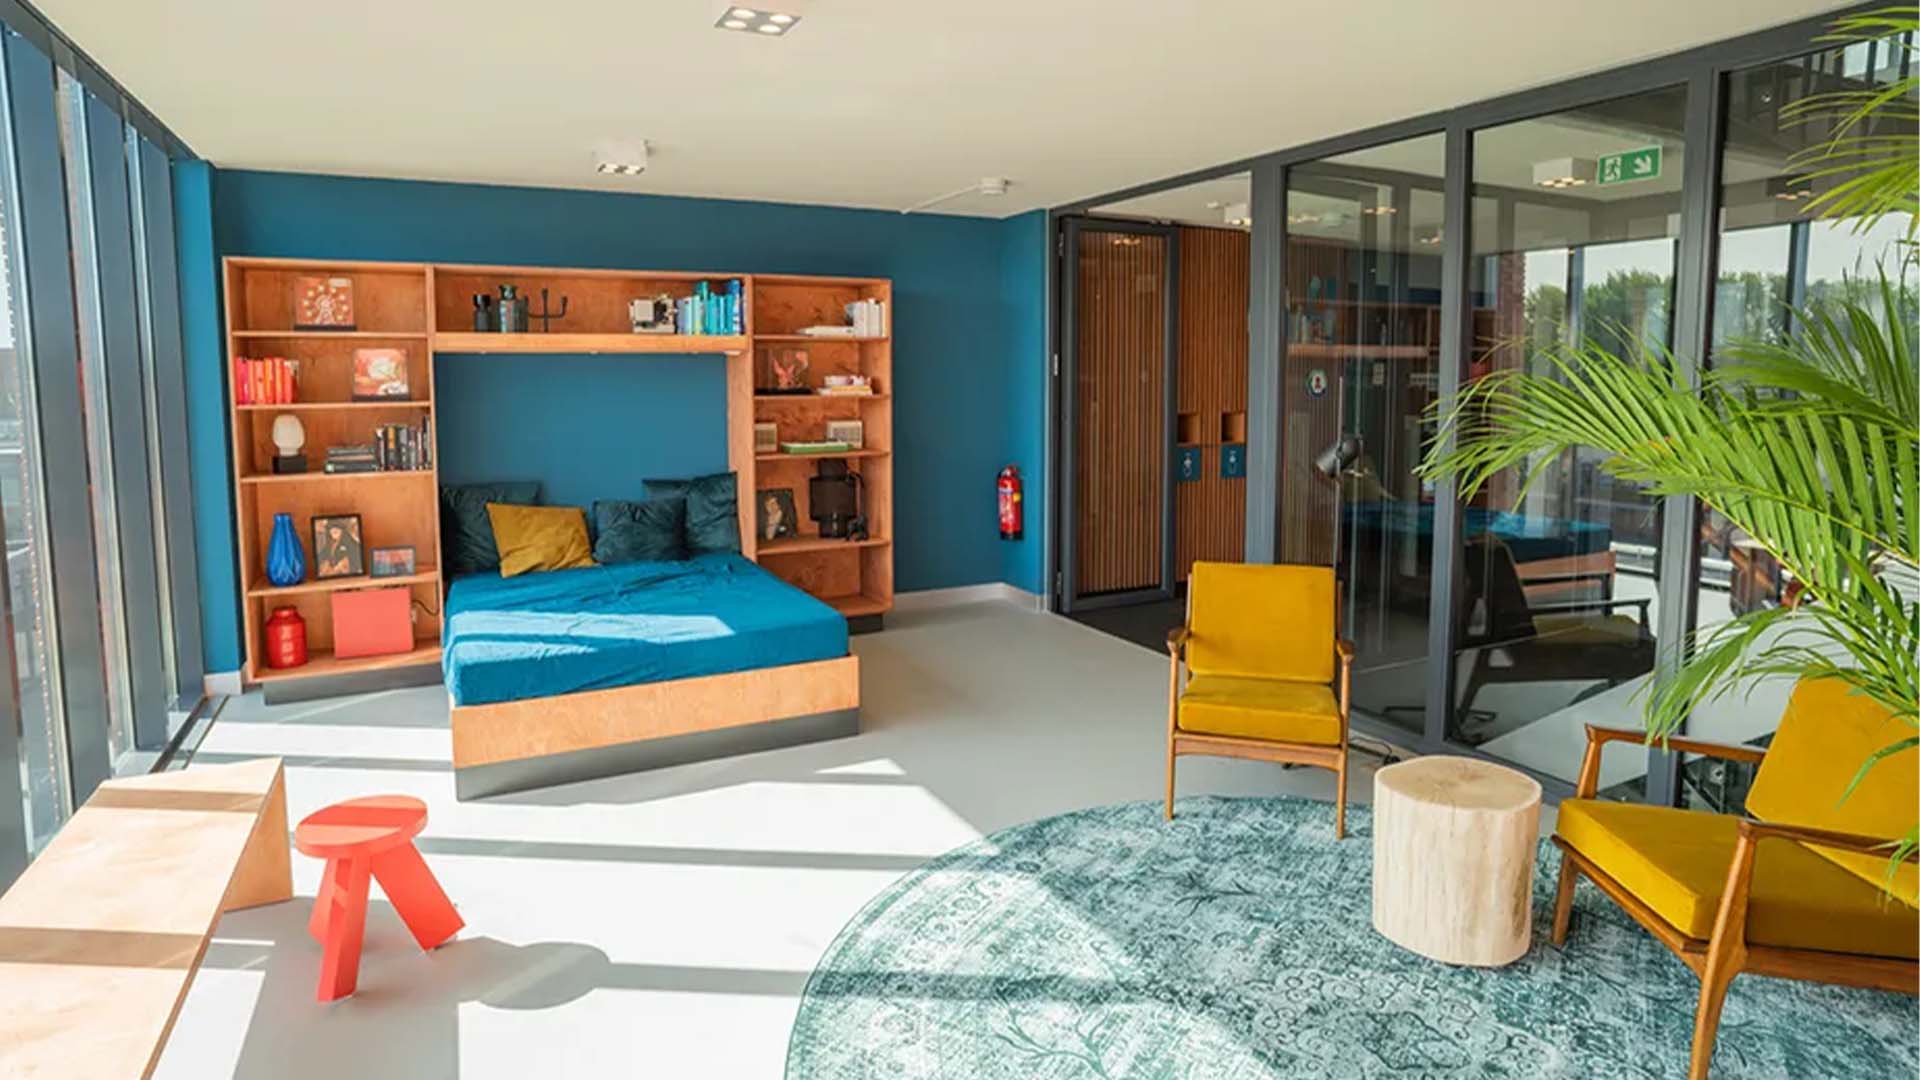 Maaskant - Startmotor - Studiodat - maatwerk - meubilair - appartementengebouw - bed - kast